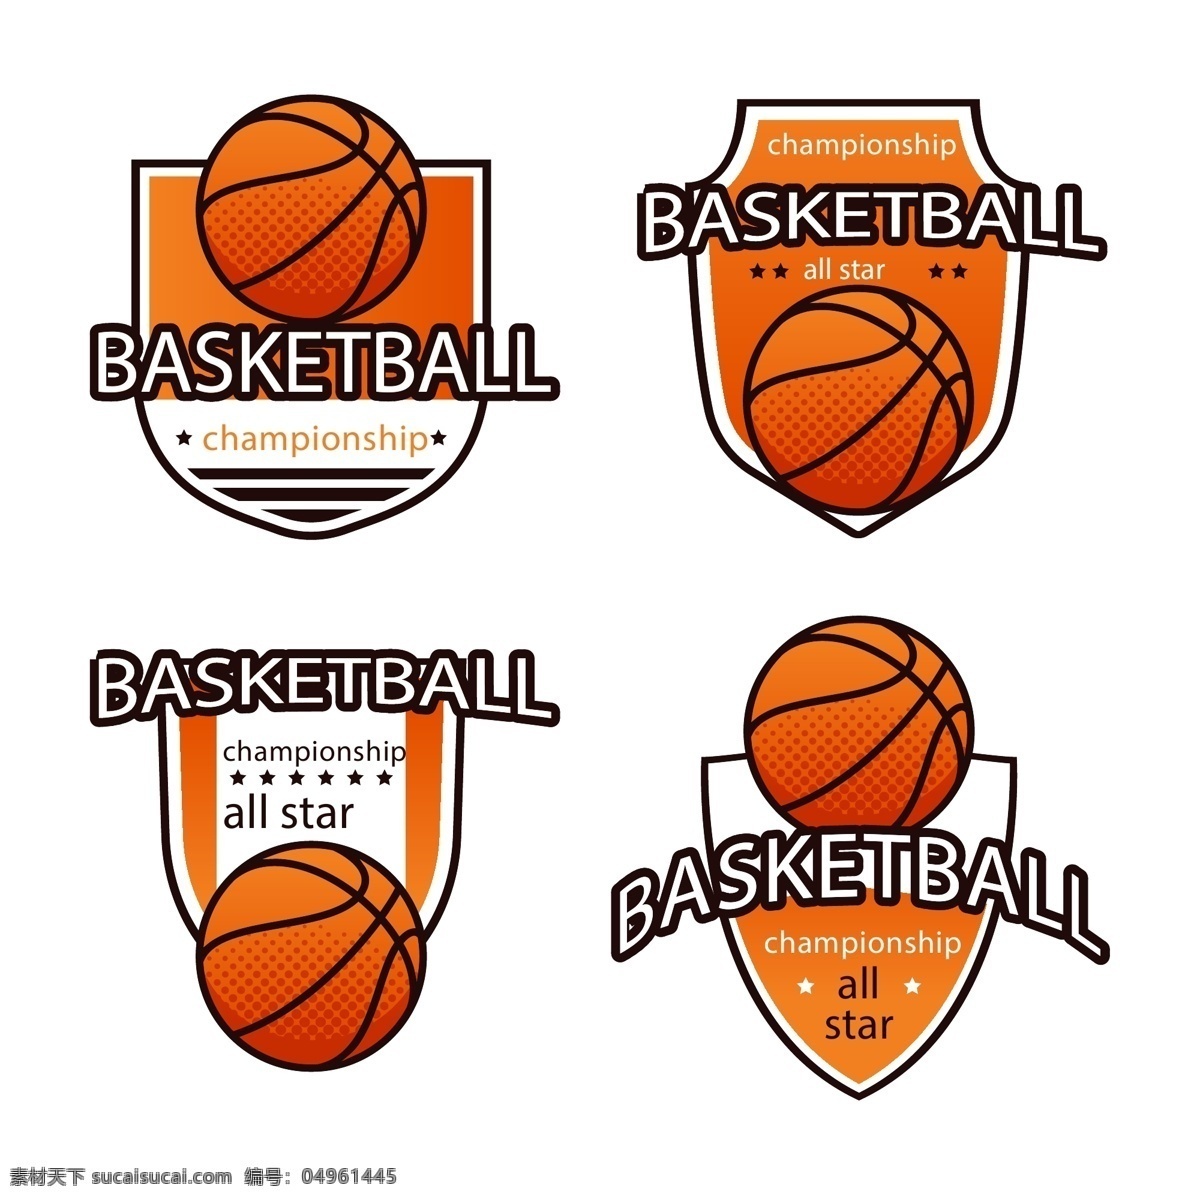 篮球相关 篮球 矢量篮球 篮球运动 球类 球 篮球比赛海报 篮球海报 篮球宣传 运动海报 室内运动 奥运会 运动健身 体育运动 篮球馆 篮球场 篮球图表 篮球标志 卡通篮球 篮球服 卡通设计